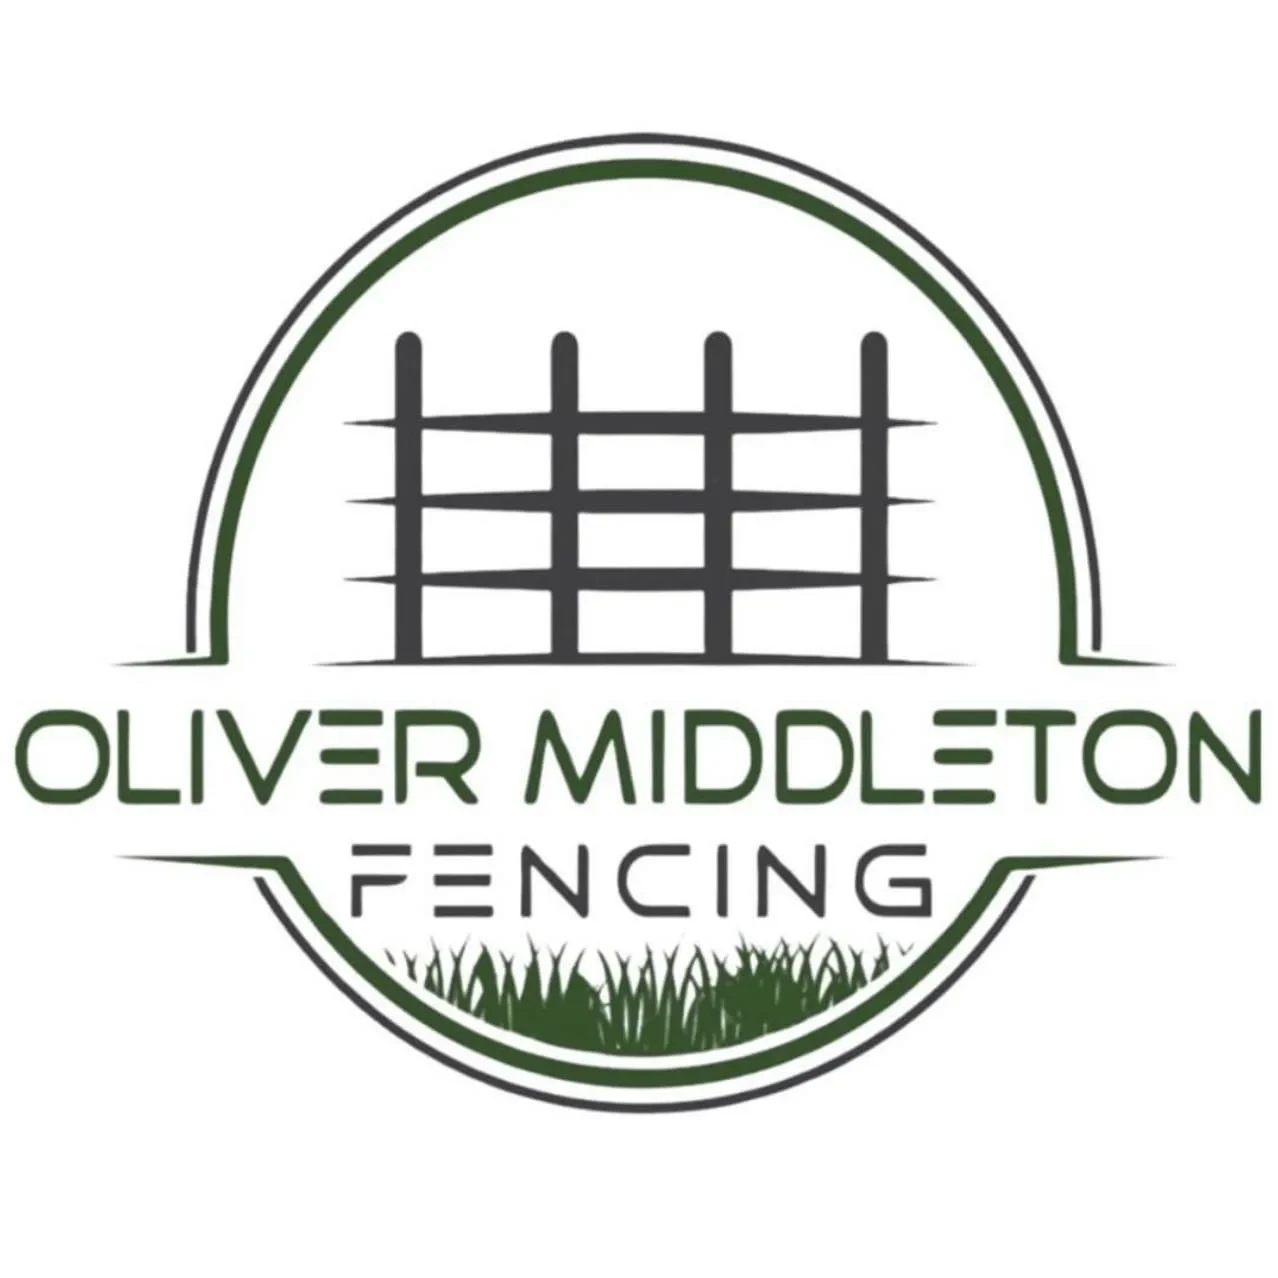 Oliver Middleton Fencing Ltd - Reigate, Surrey - 07444 183646 | ShowMeLocal.com